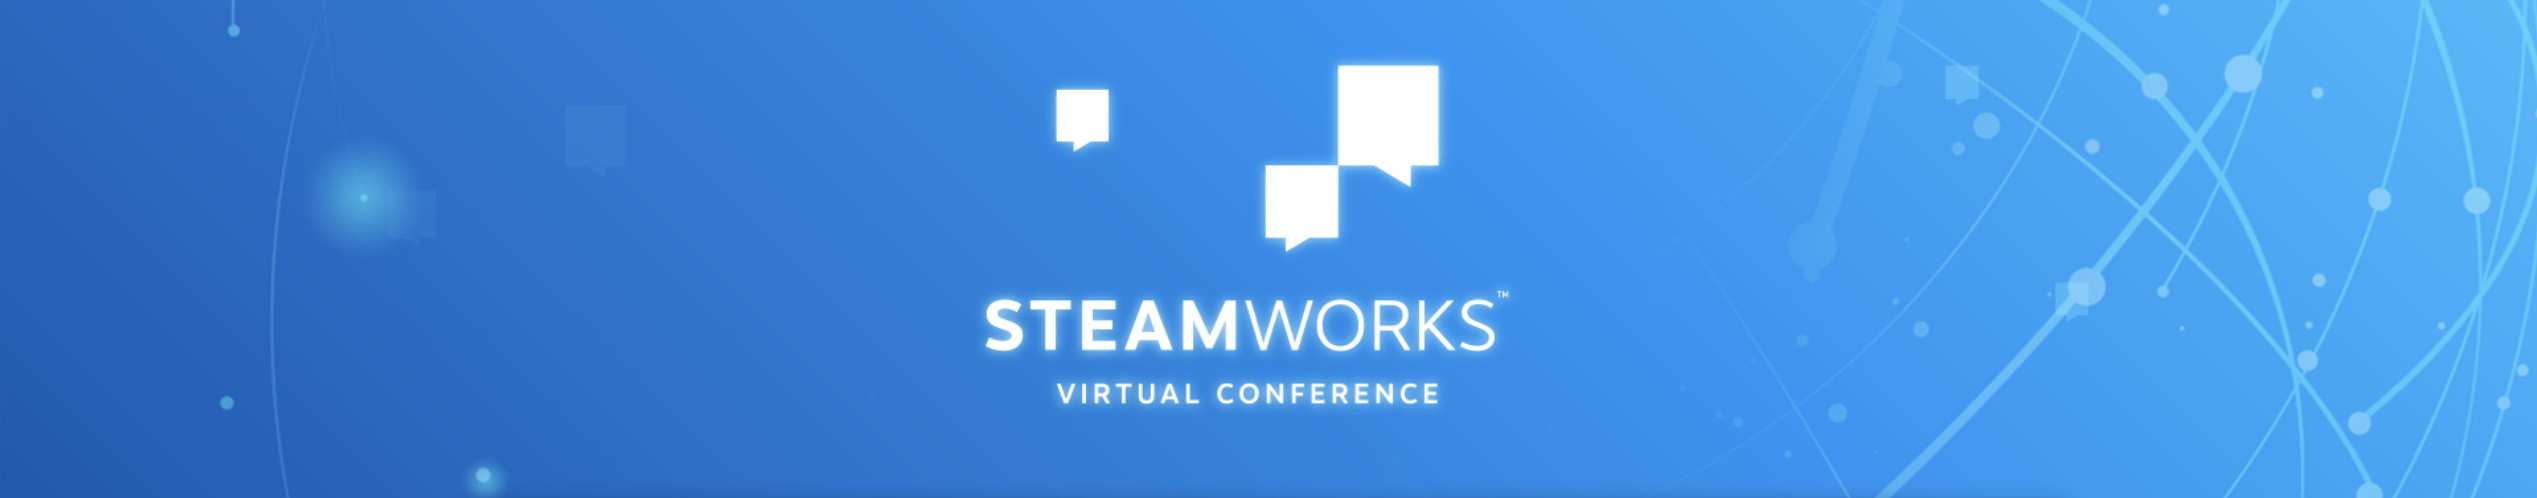 尾届Steamworks实拟散会将于4月20日举办